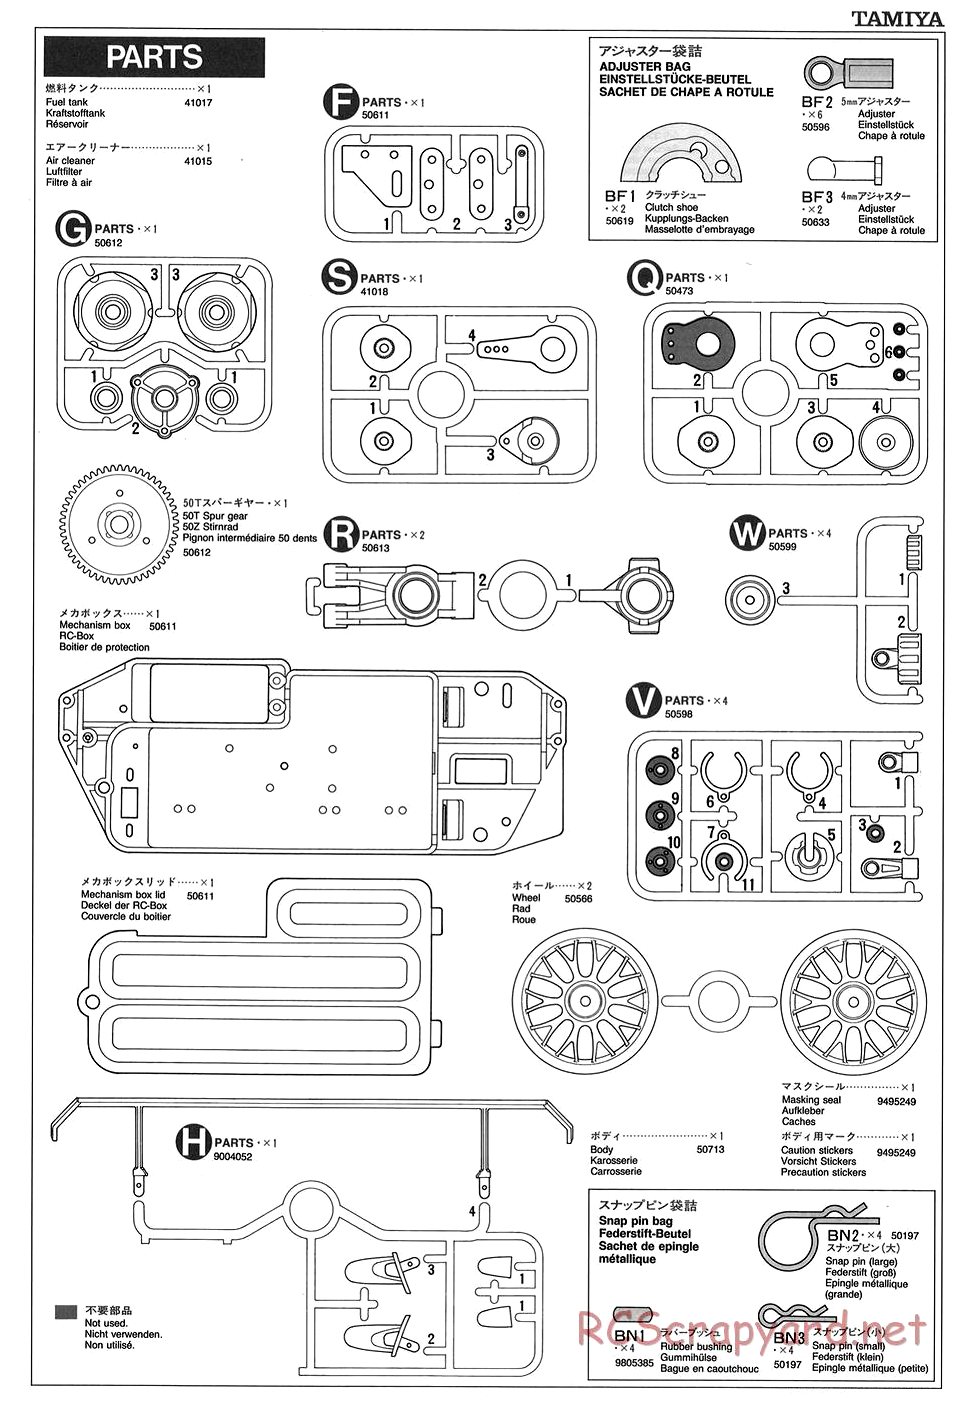 Tamiya - TGX Mk.1 Chassis - Manual - Page 26